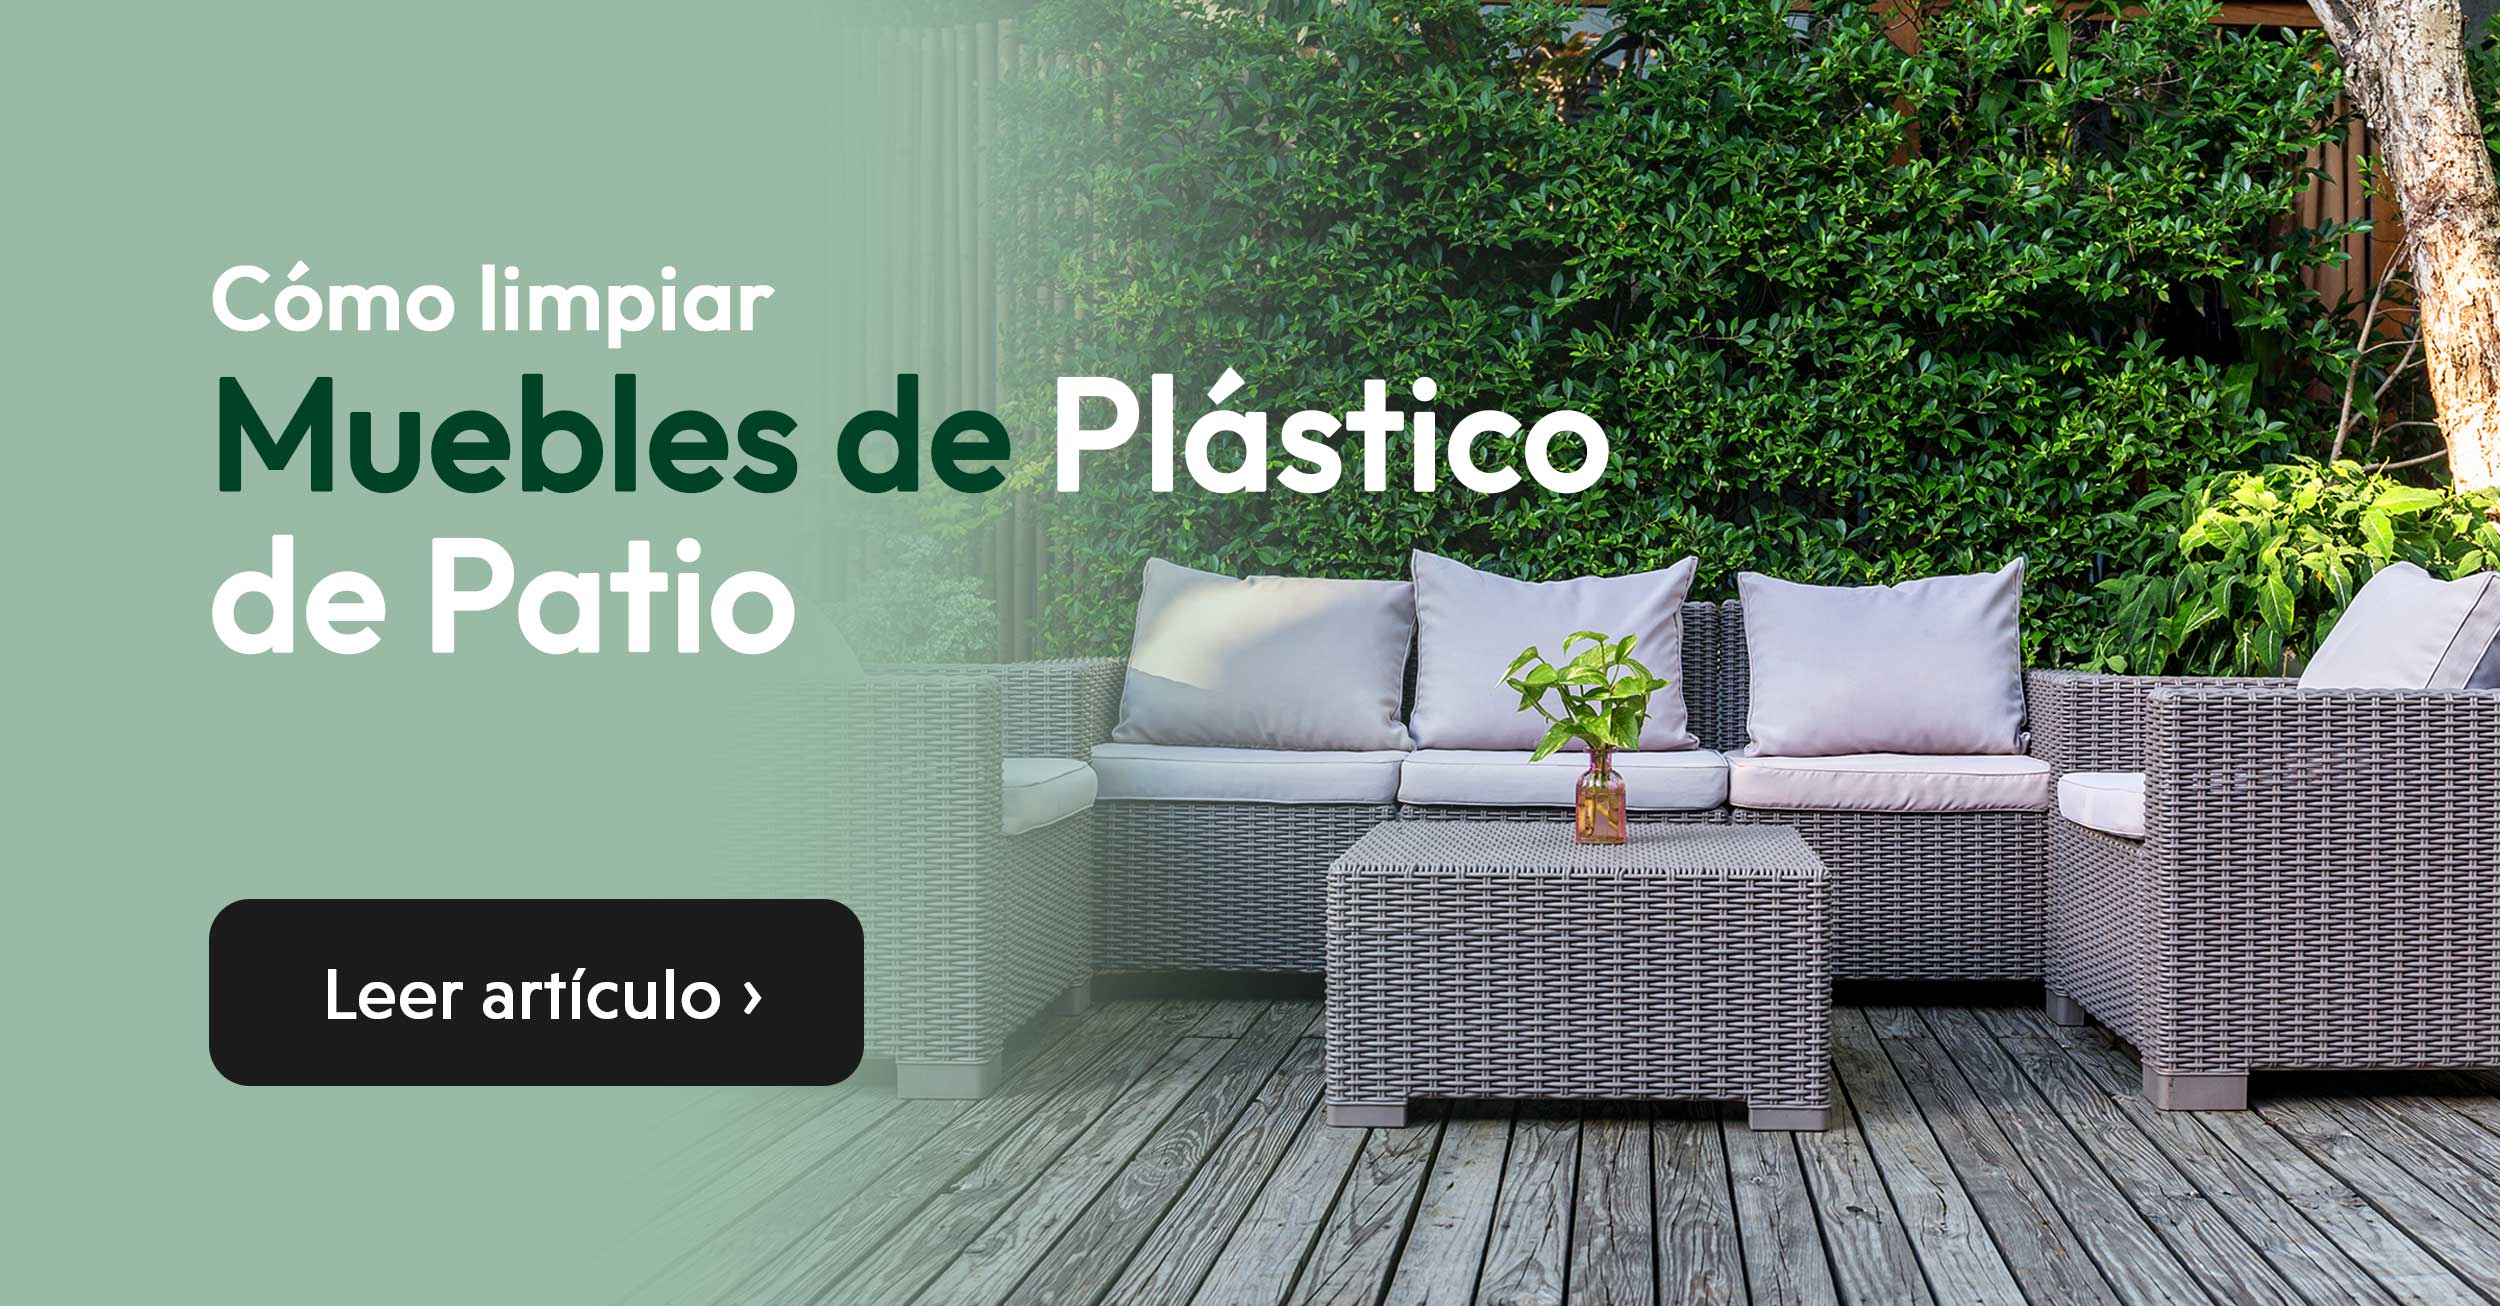 limpiar muebles de plastico de patio